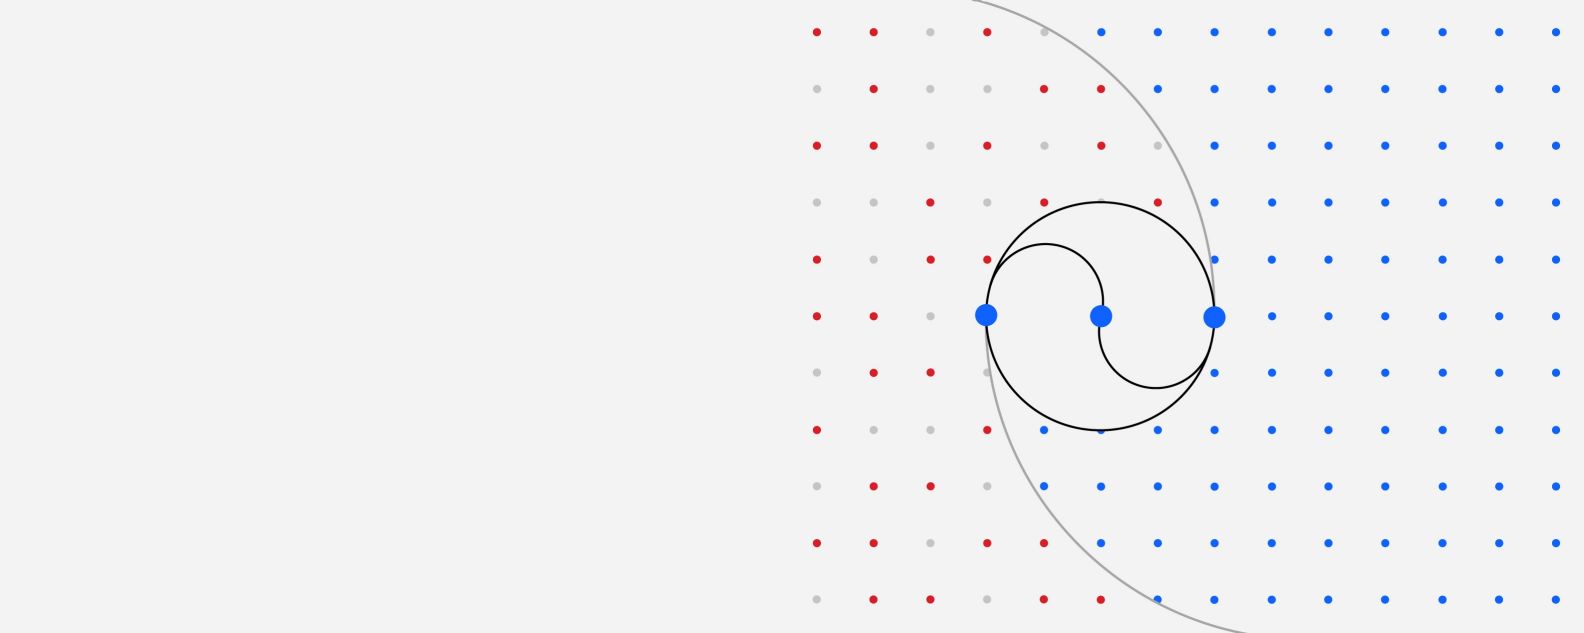 图示：彩色圆点网格，其中三个较大的圆点通过各种曲线连接